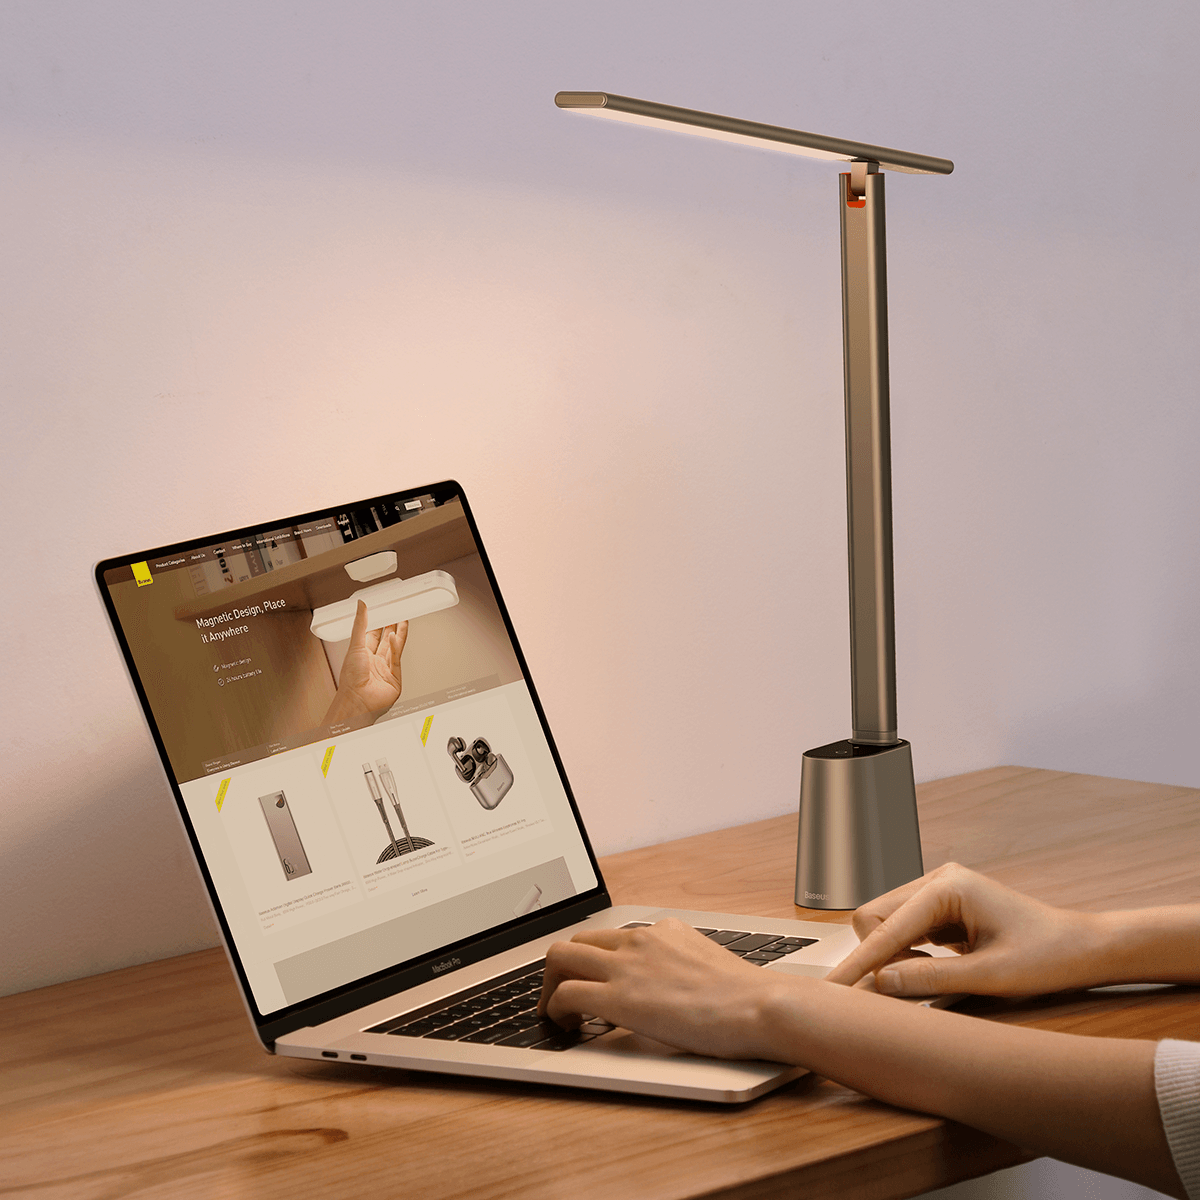 Smarte LED Schreibtischlampe, automatische Helligkeitsanpassung, integrierter Akku - Smarter Home Office - Smartes Arbeiten im Home Office und Unterwegs